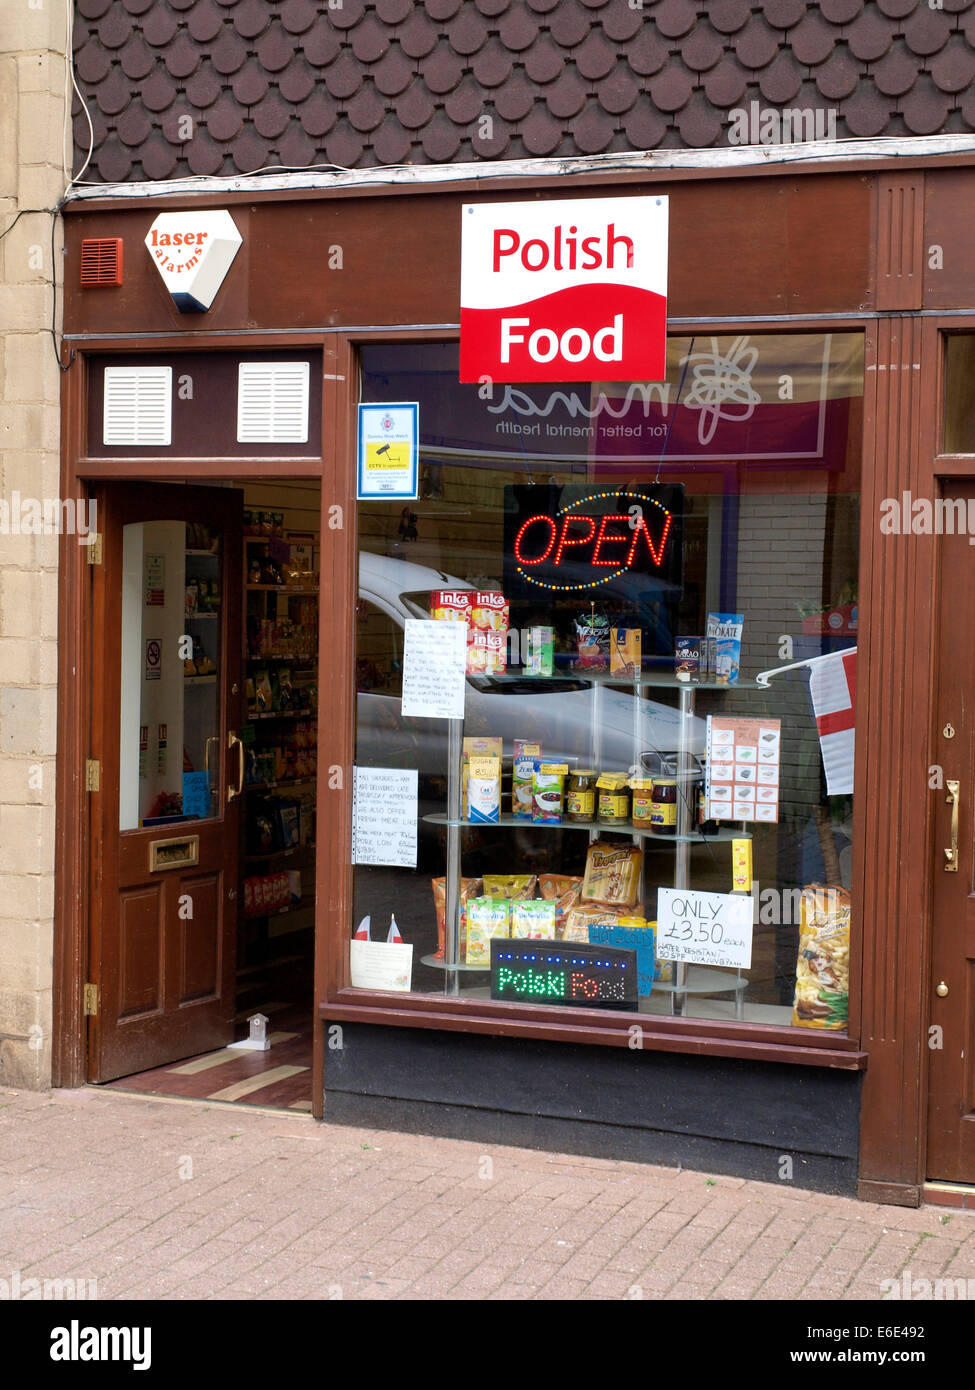 Polish food shop, Dursley, Gloucestershire, UK Stock Photo